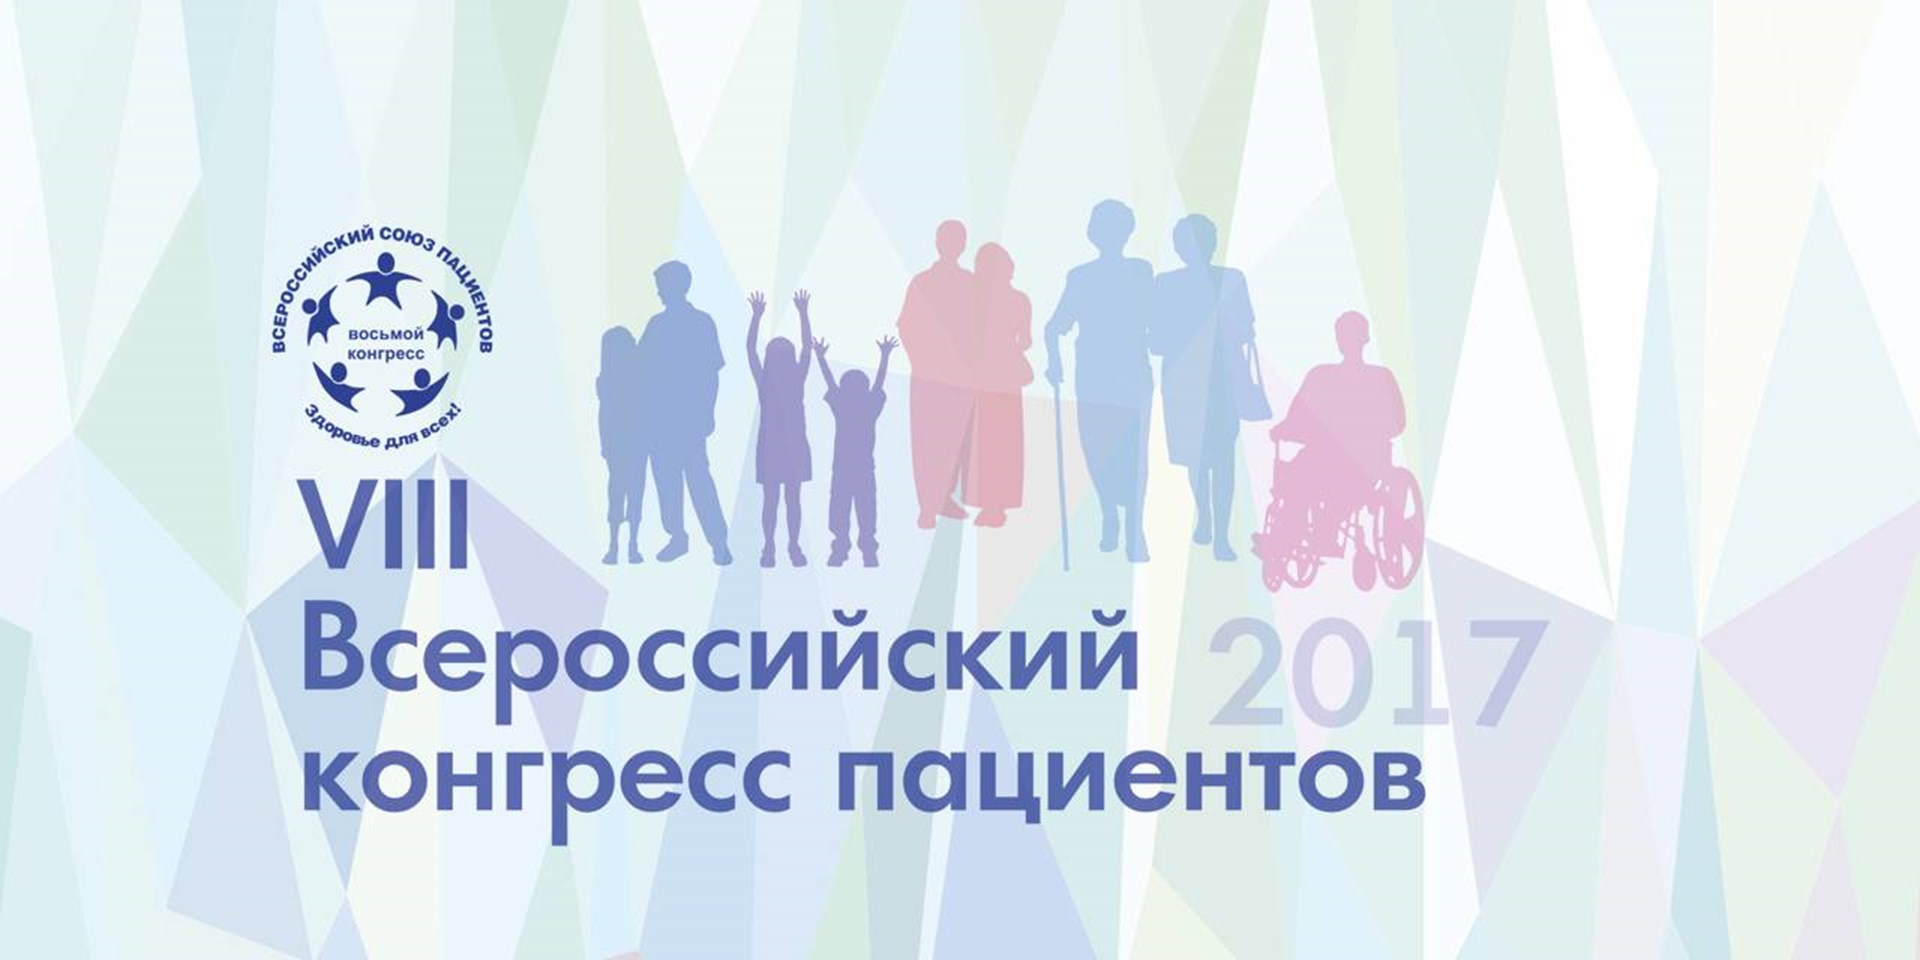 VIII Всероссийский конгресс пациентов приглашает к участию